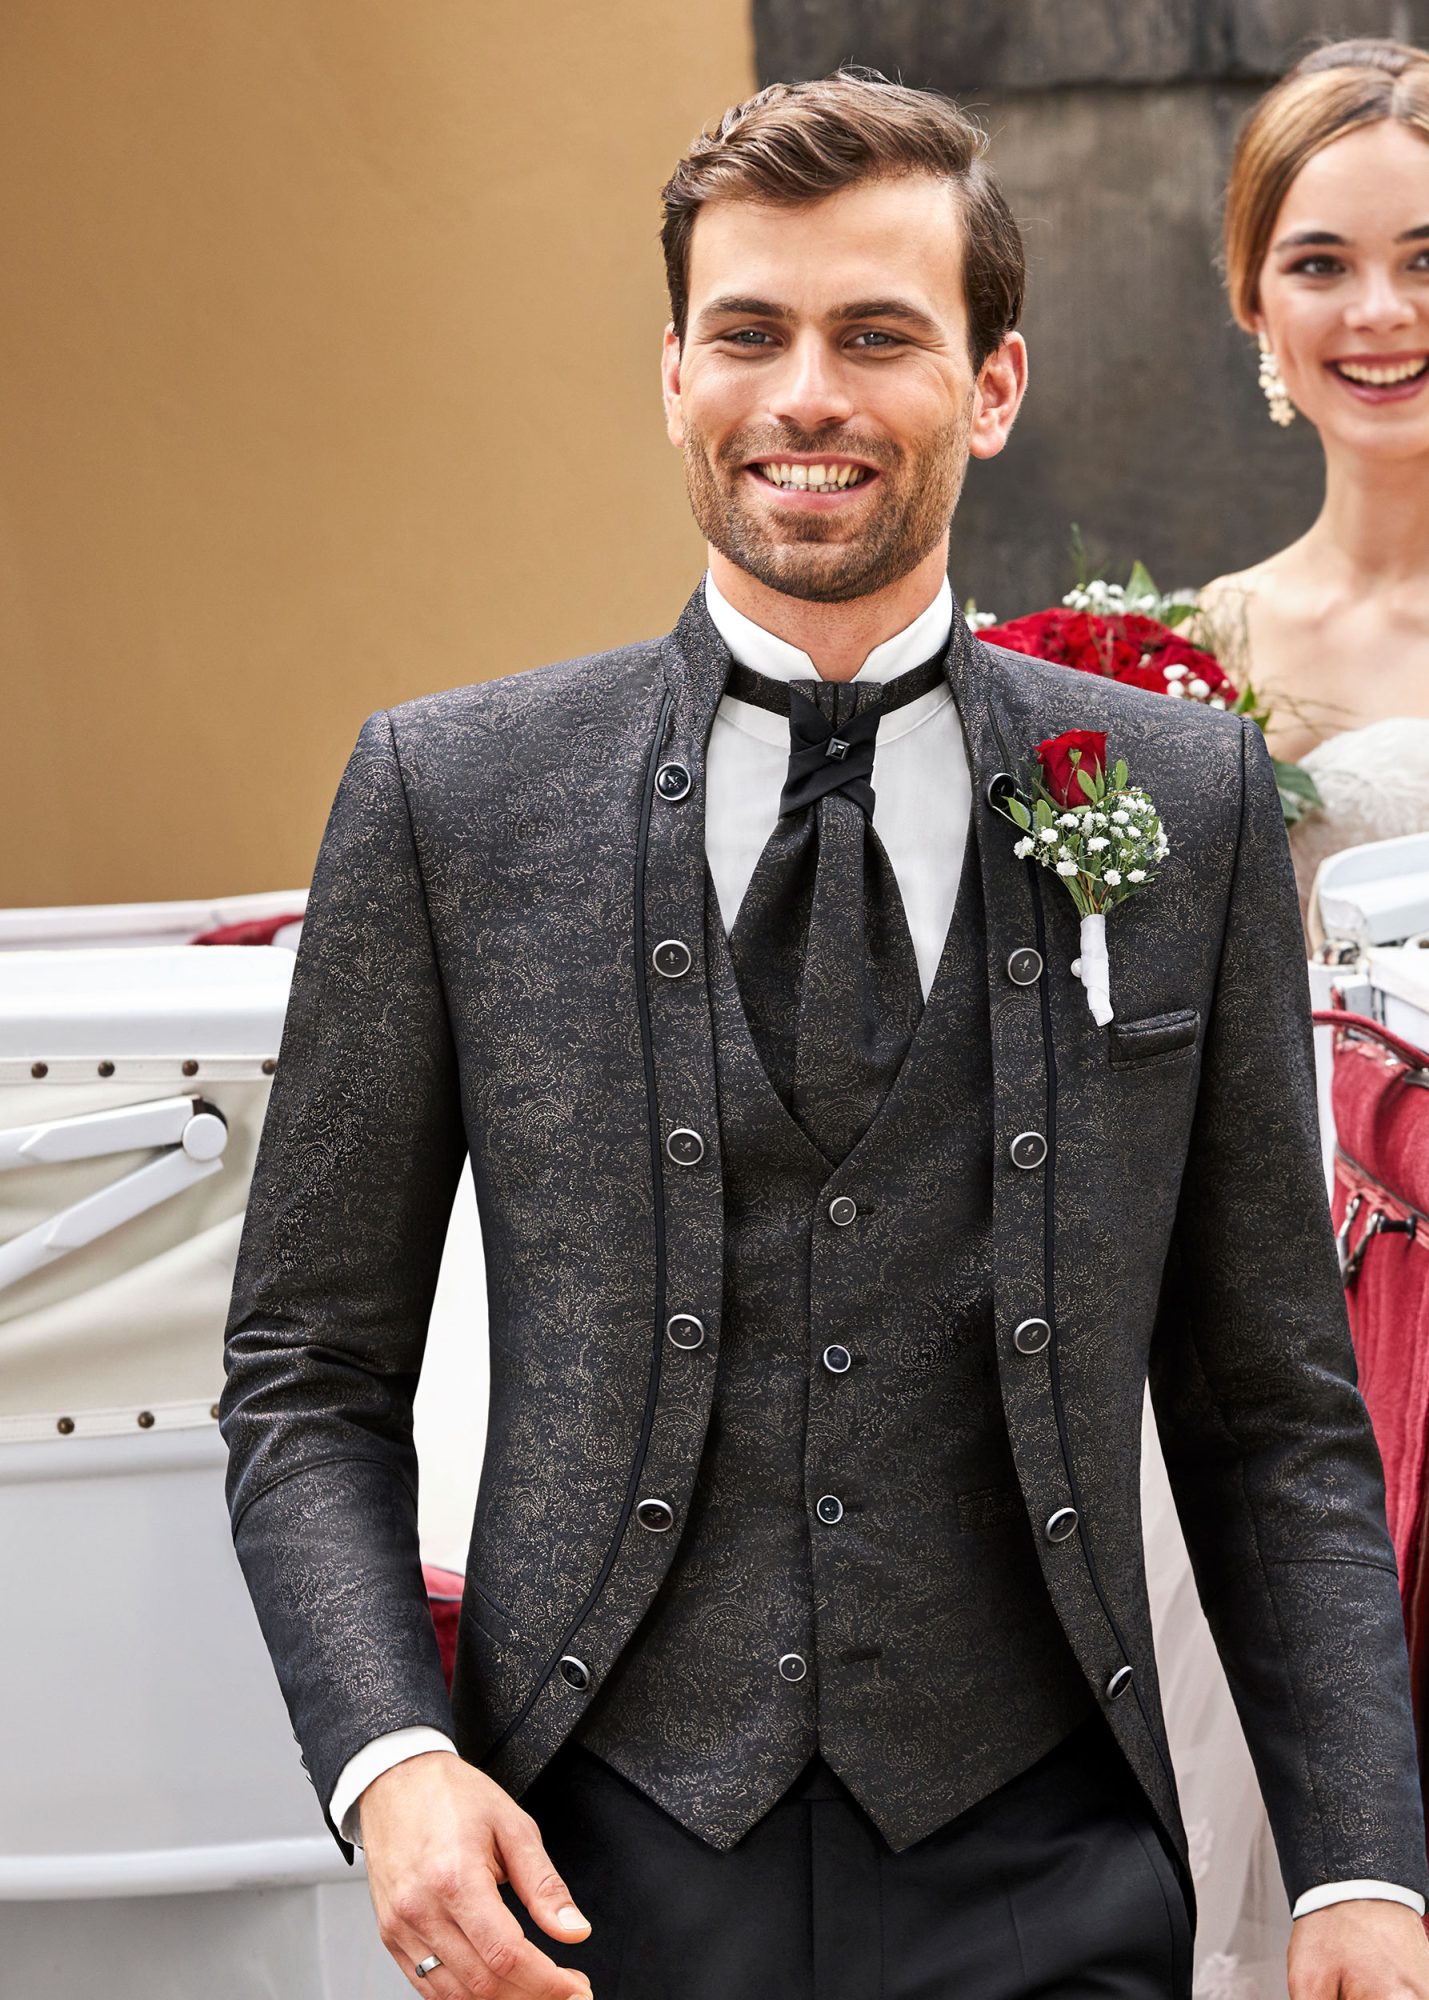 Hochzeitsanzug TZ Look6 aus der Kollektion TZIACCO der Marke Wilvorst in der Farbe Braun/Schwarz garantiert den royalen Auftritt